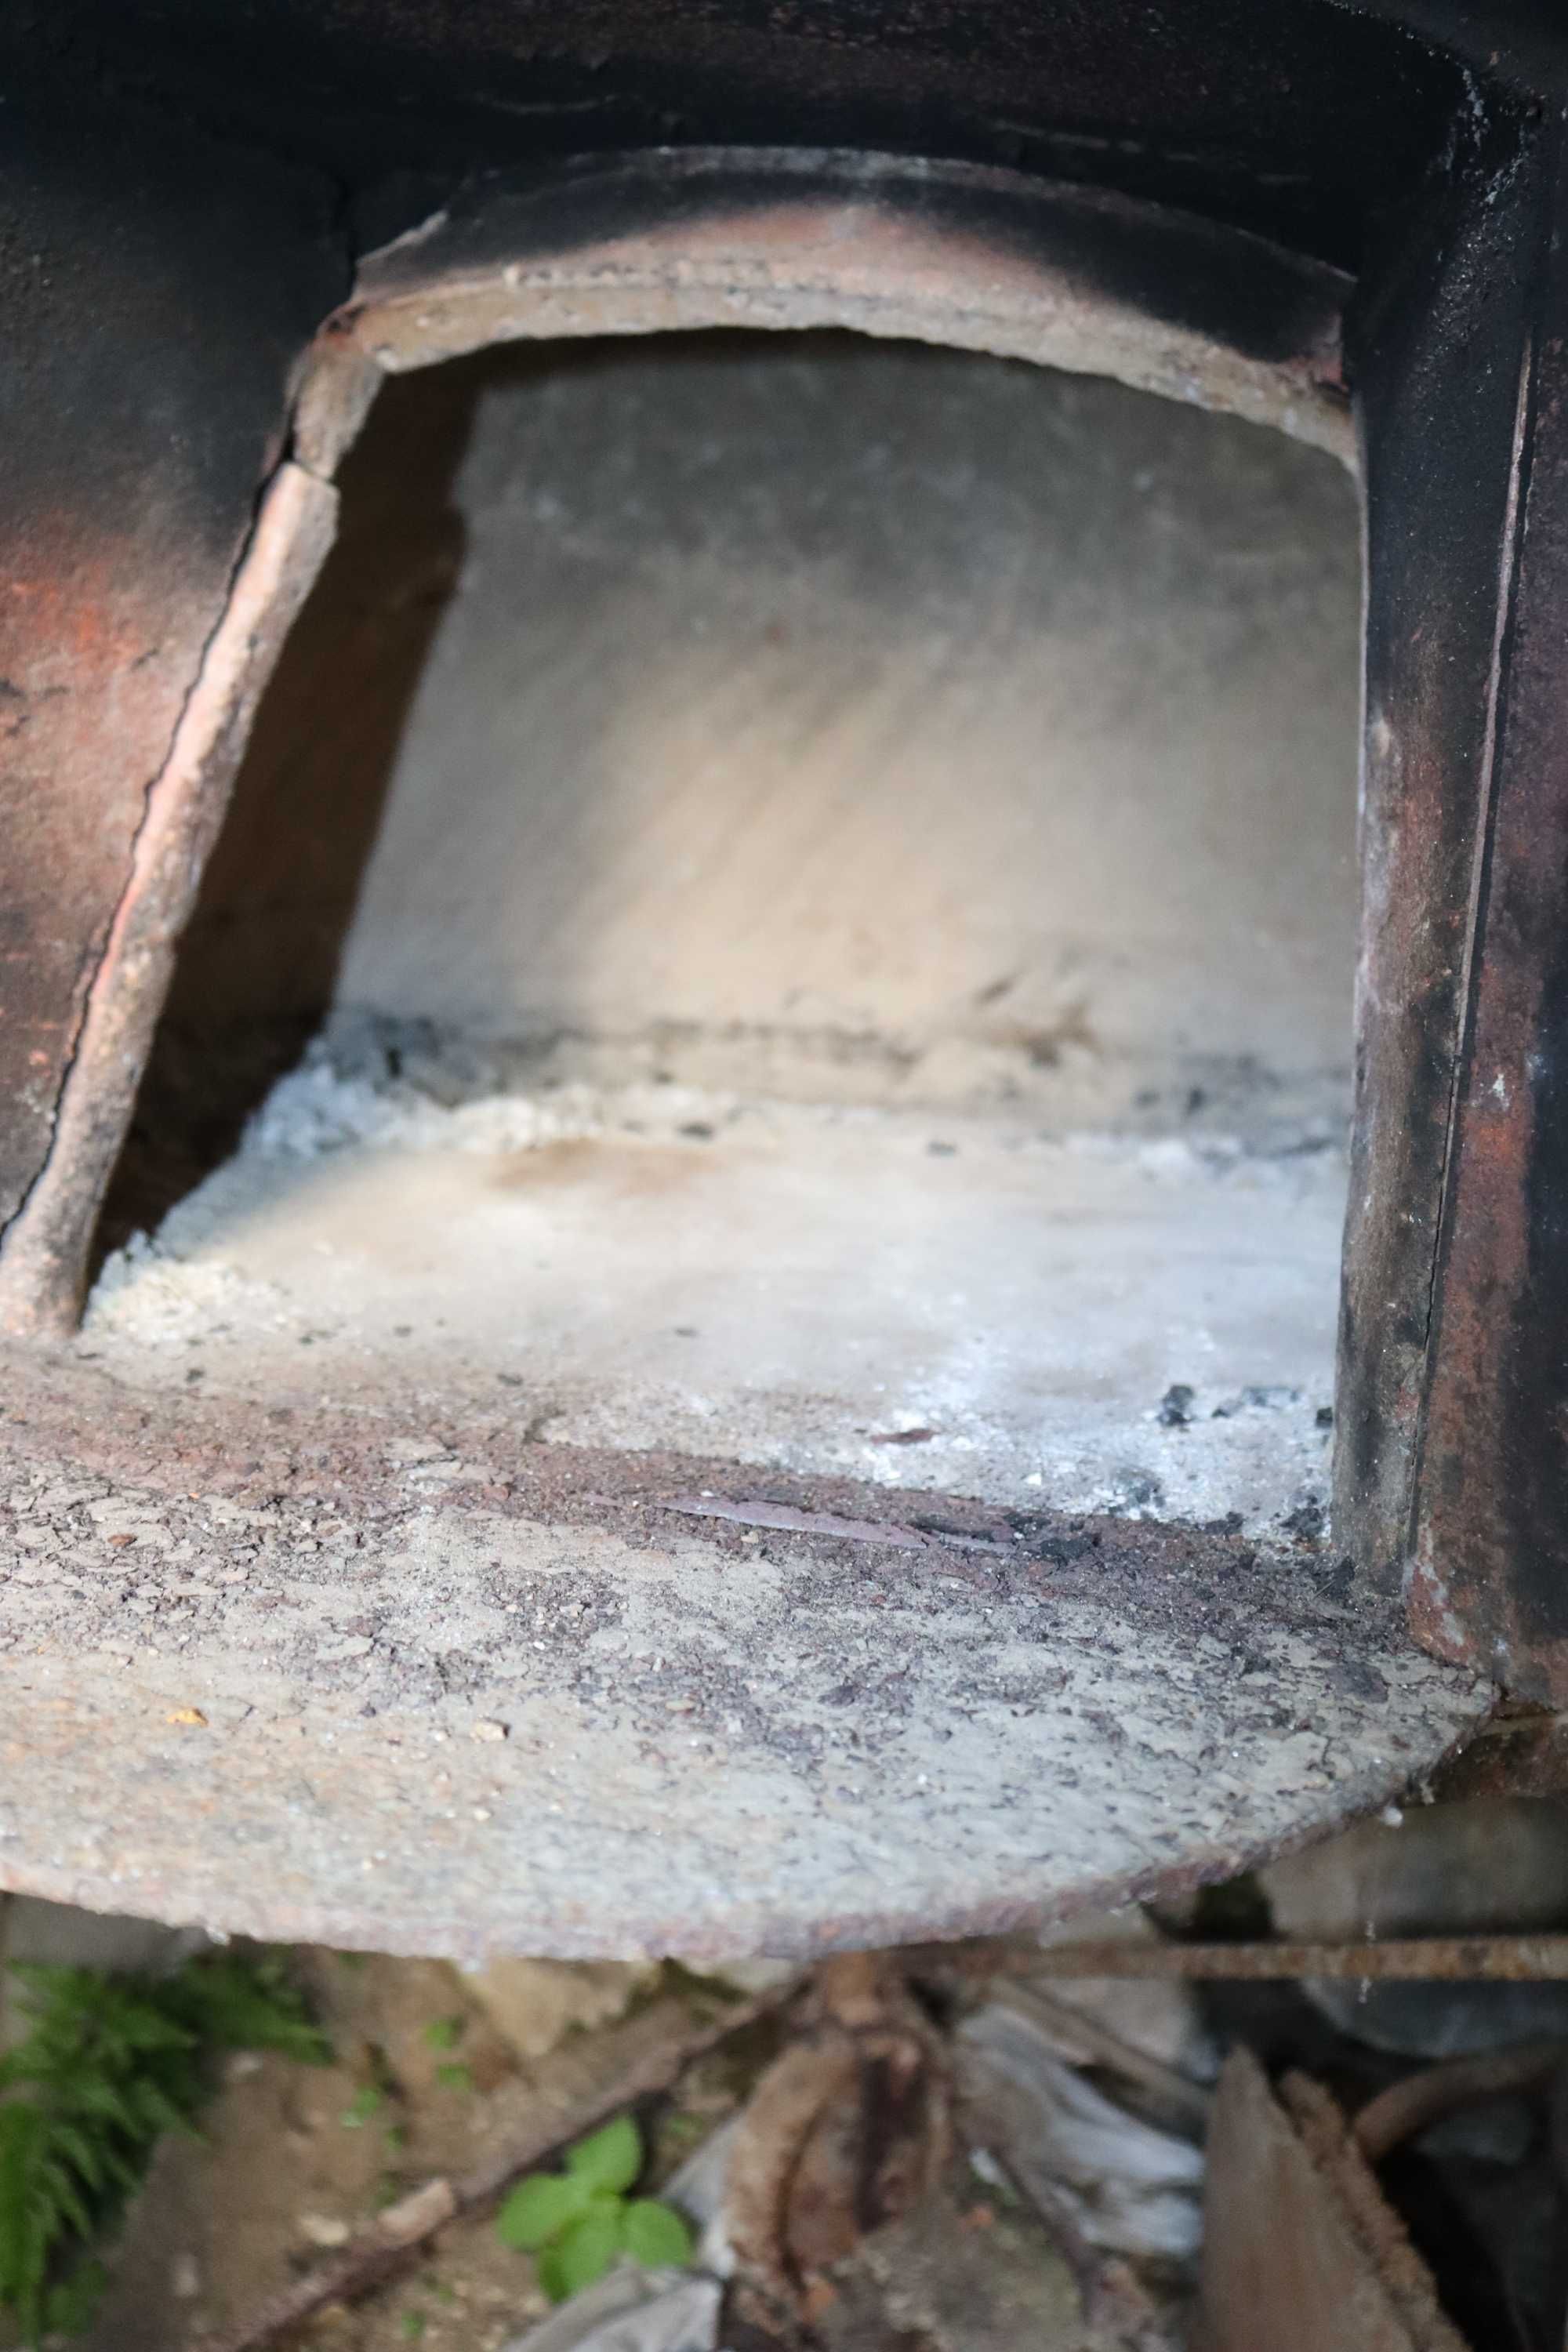 panelas de ferro fundido
forno a lenha com 3 rodas
carrinho de adubo